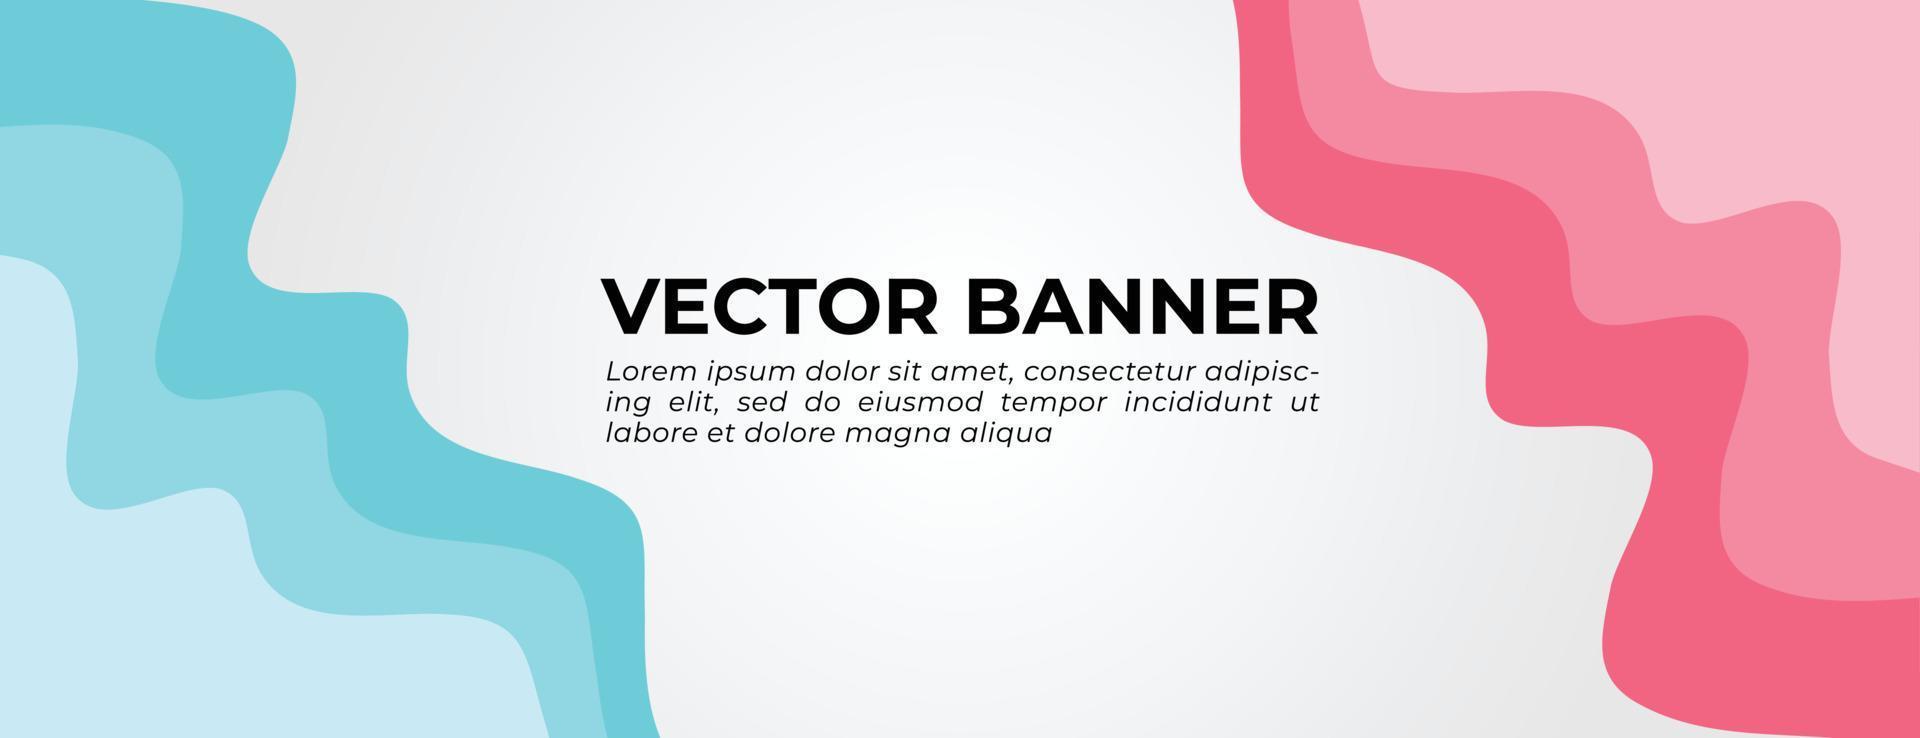 banner vectorial azul y rosa con diseño de plantilla de ondas abstractas vector